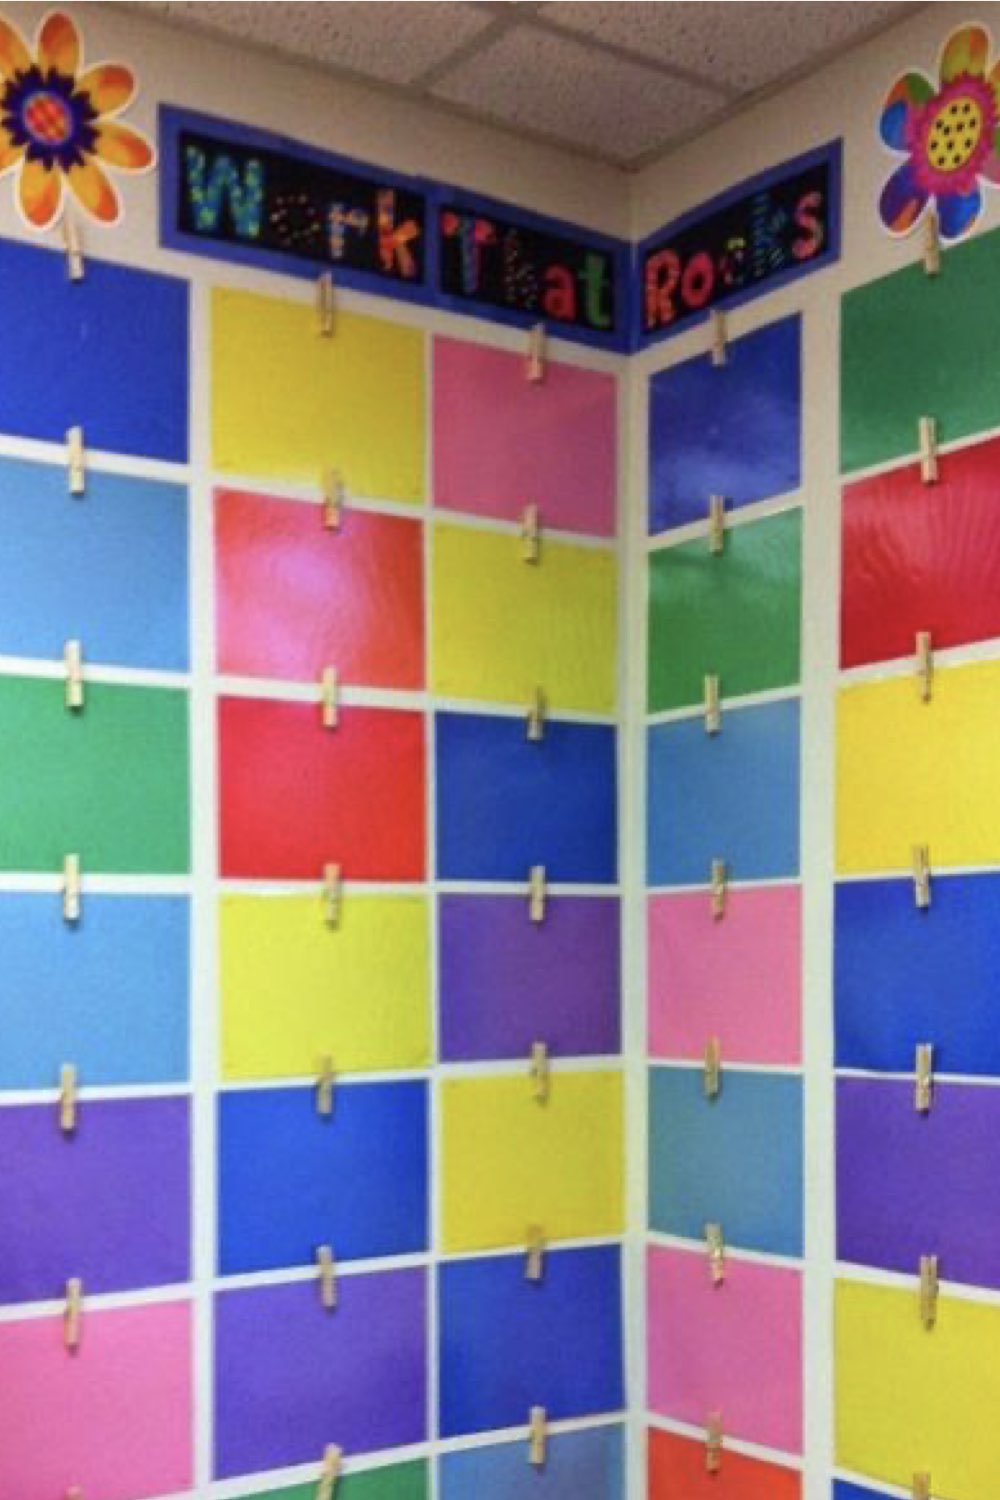 idee amenagement classe professeur des ecoles coin de la salle espace mise en valeur des travaux des élèves papier adhésif coloré épingle à linge